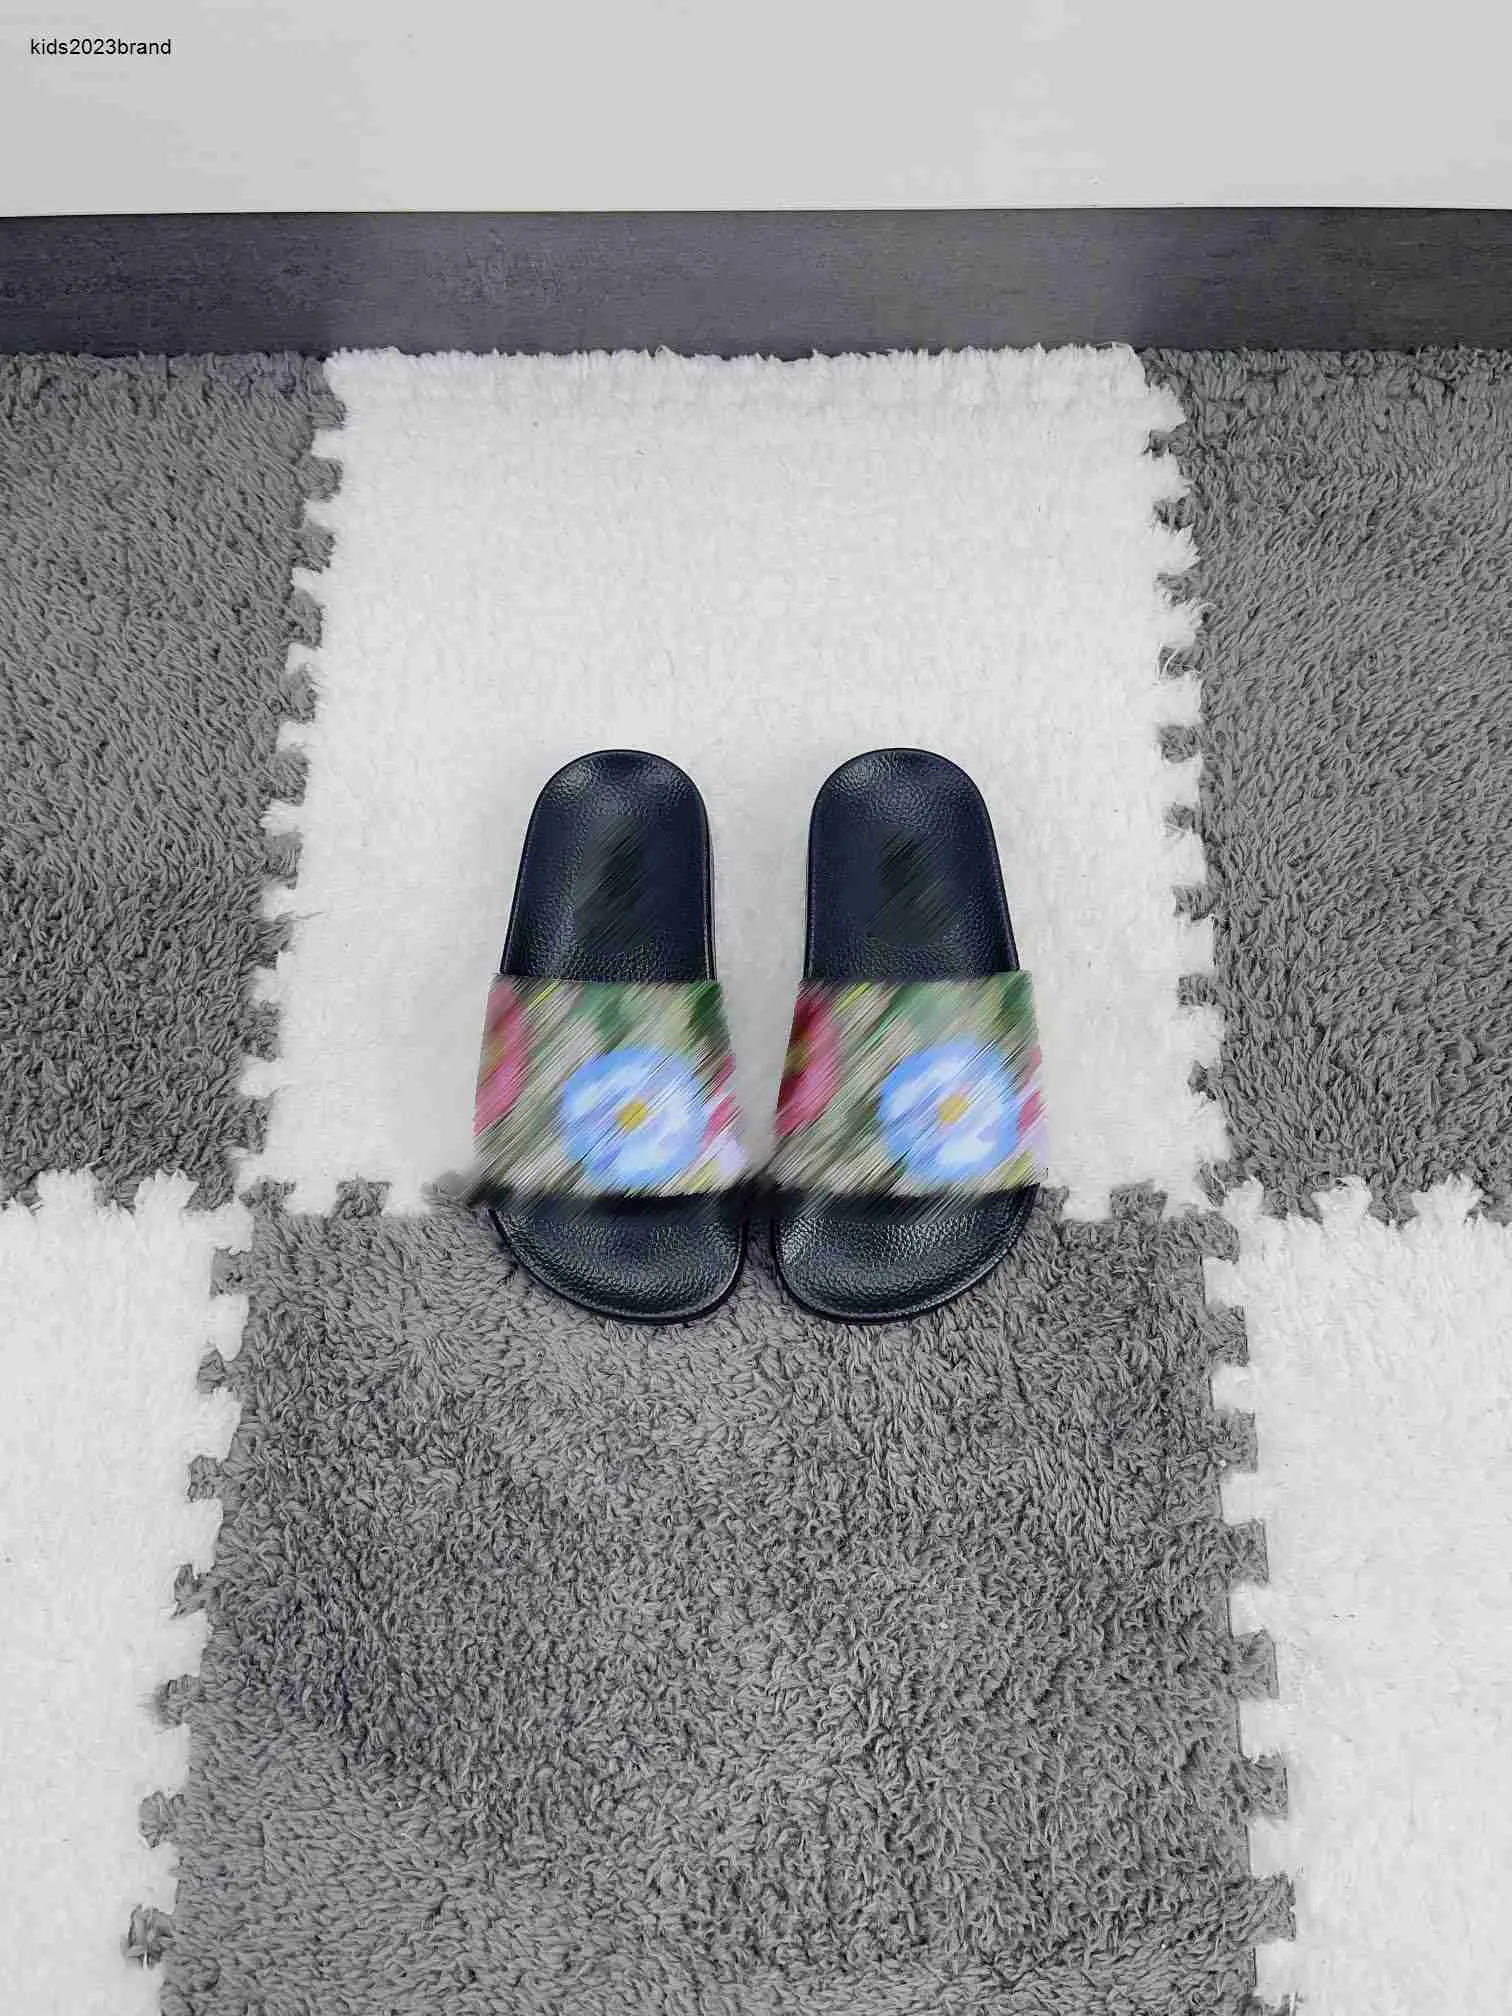 Новые детские тапочки. Детская обувь с красочным цветочным принтом, размеры 26–35. В комплект входят дизайнерские летние сандалии для мальчиков и девочек, 20 января.